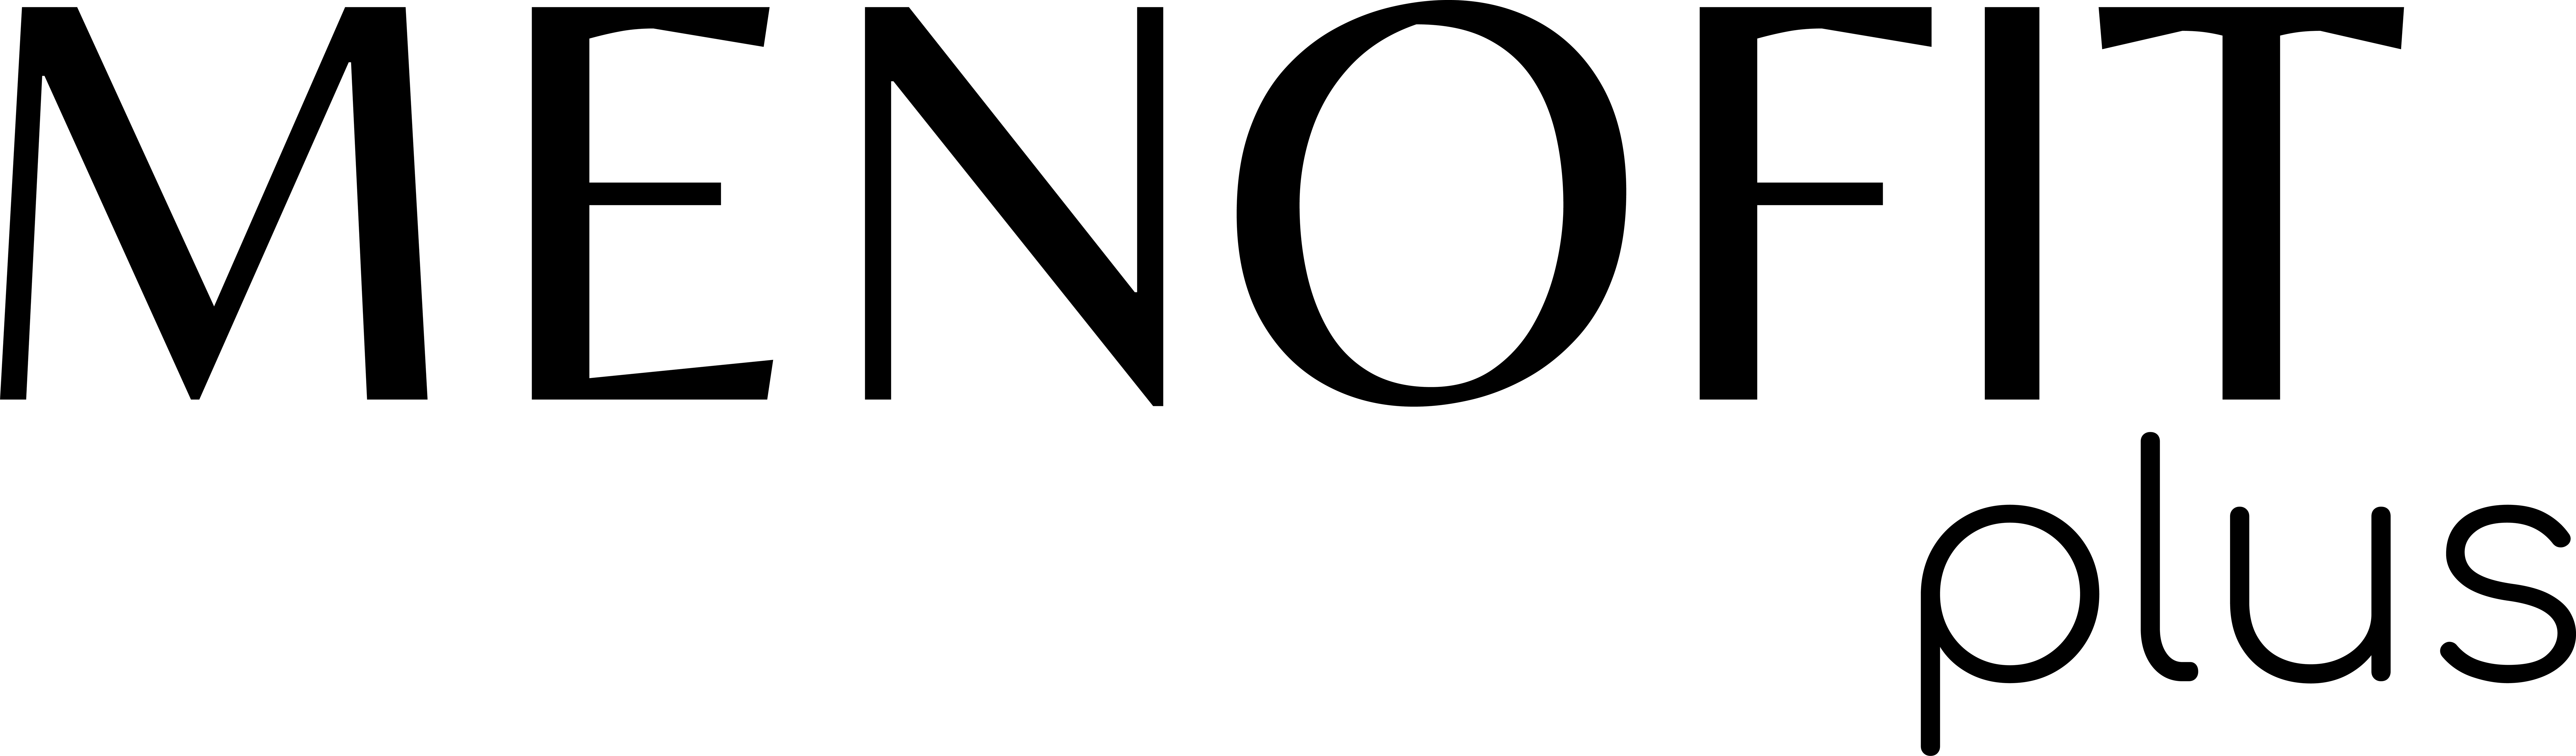 Logo-2-1.png